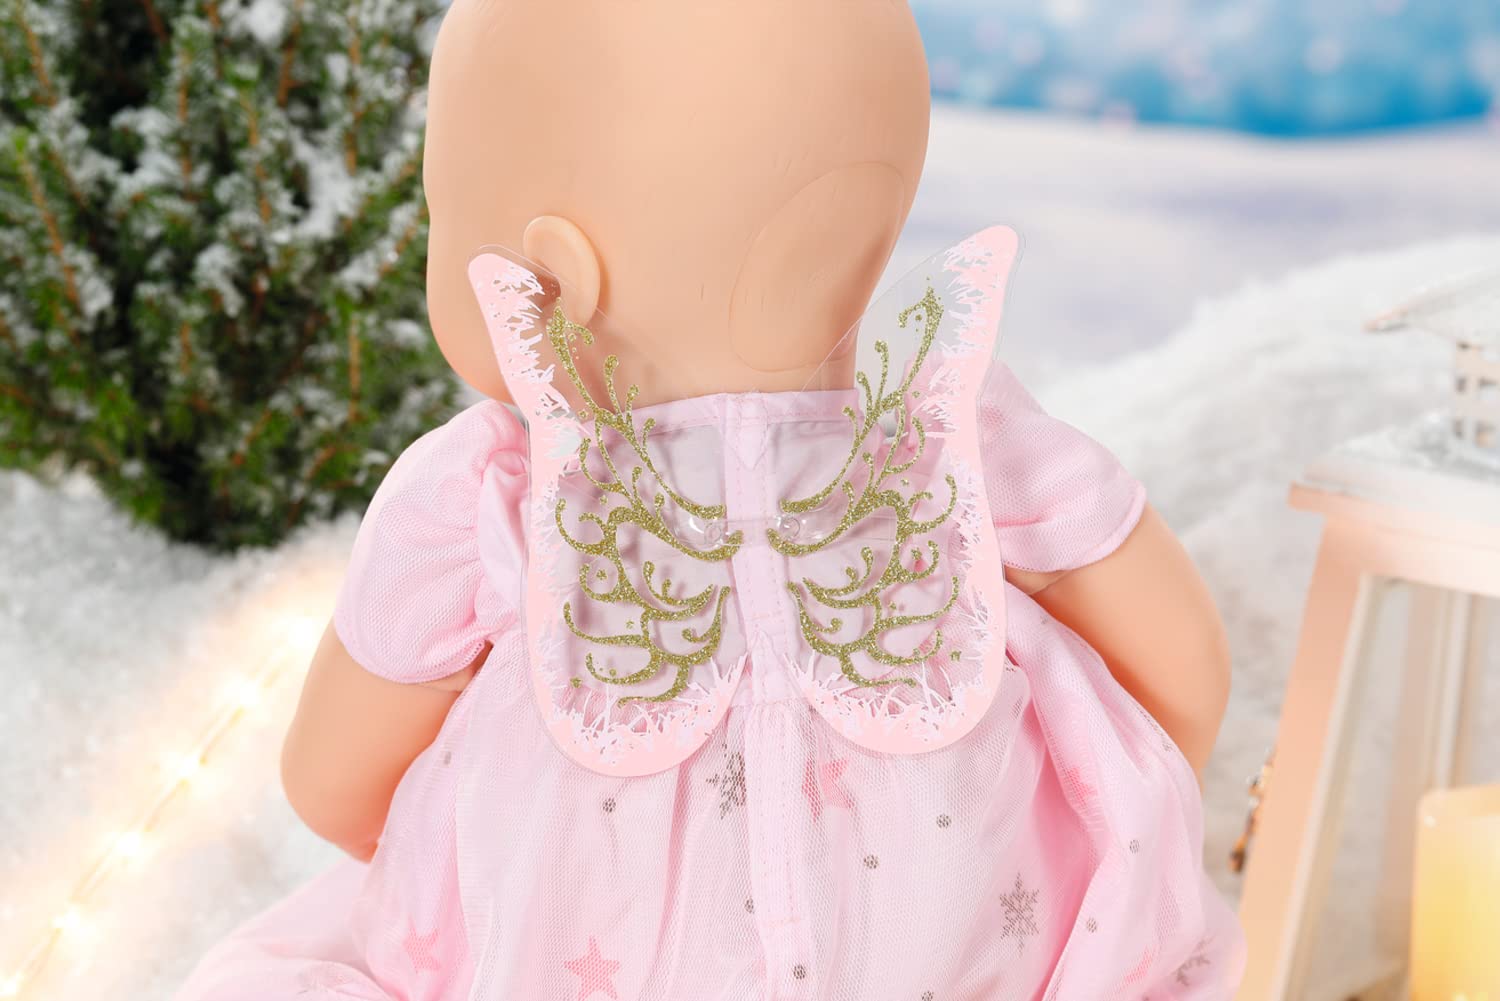 Baby Annabell 707241 Weihnachtskleid 43cm, Multi